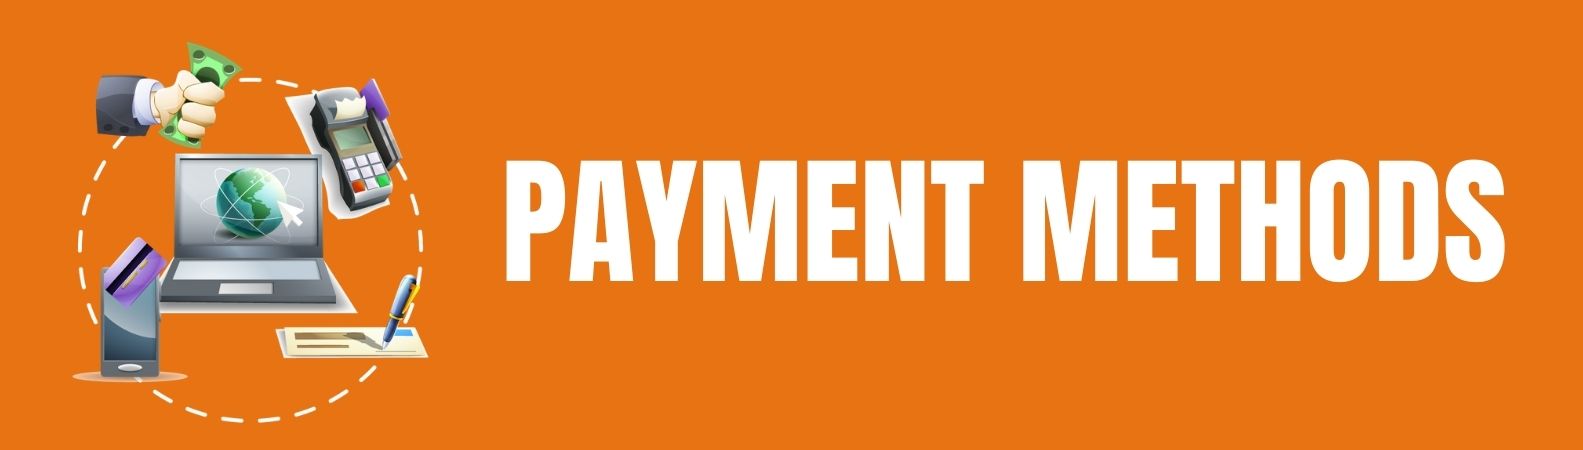 Payment Methods Header